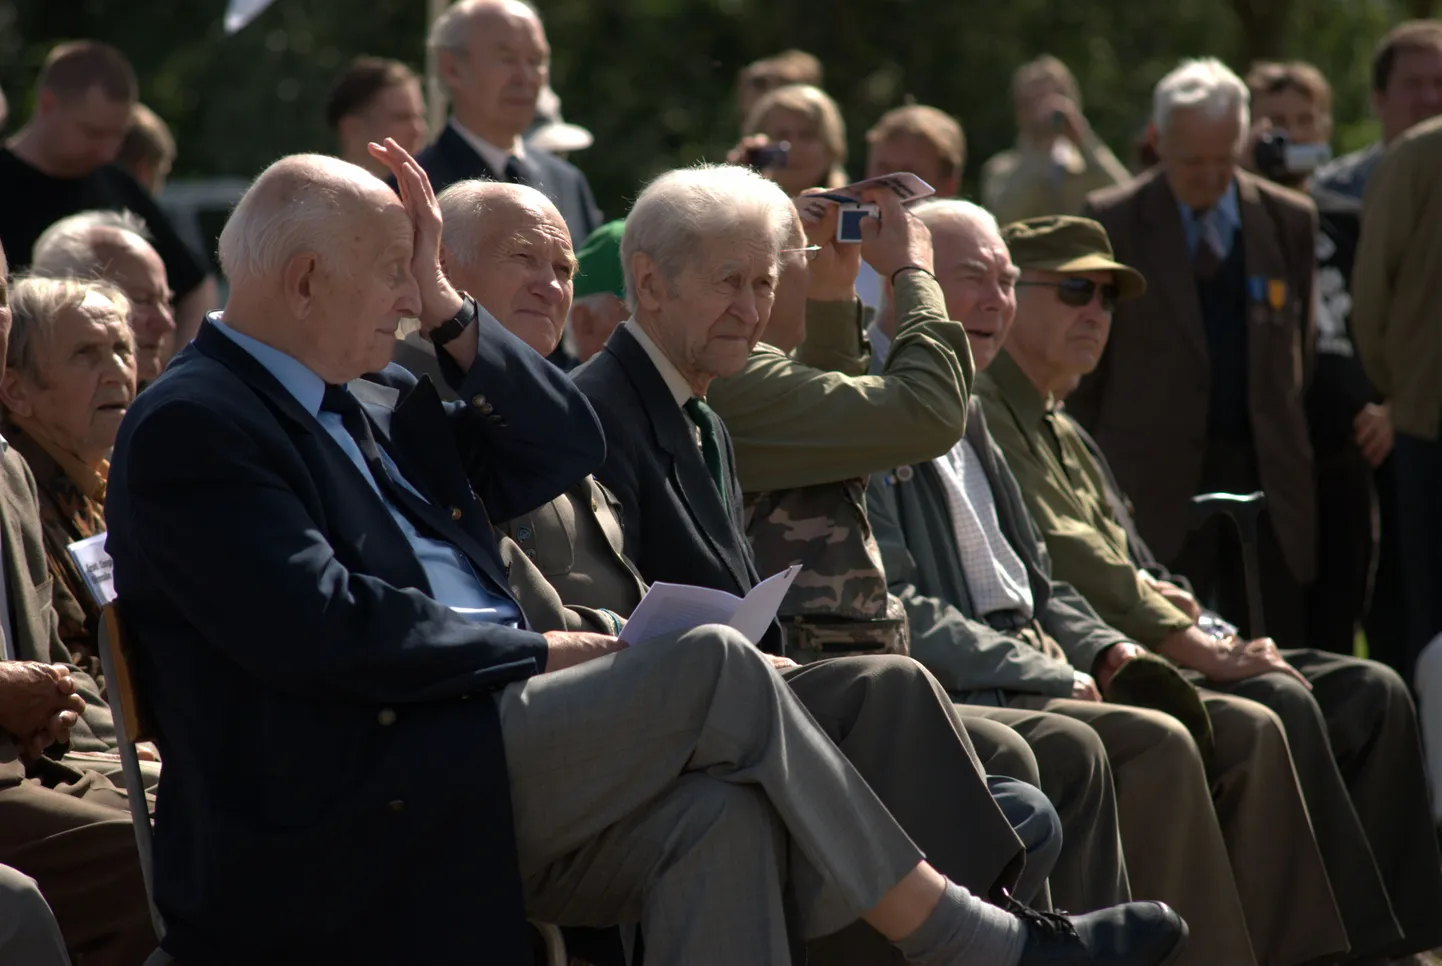 26 июля в Синимяэ собрались ветераны Ваффен СС, а также члены "Клуба друзей Эстонского легиона". На мероприятие, которое завершилось в 15 часов, также пришли некоторые политики